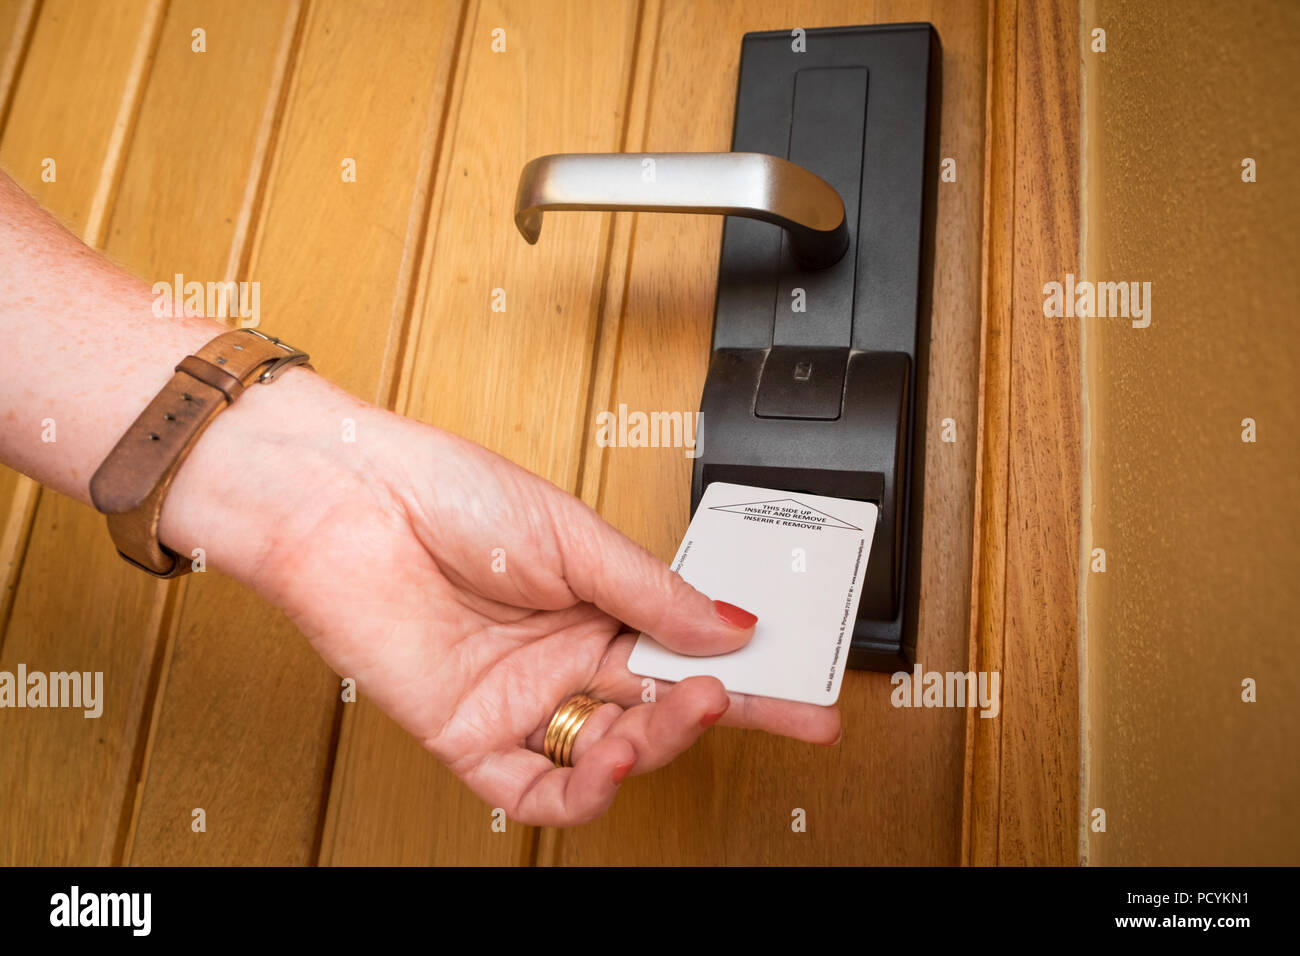 Une femme entre dans une chambre d'hôtel à l'aide d'une carte clé électrique Banque D'Images